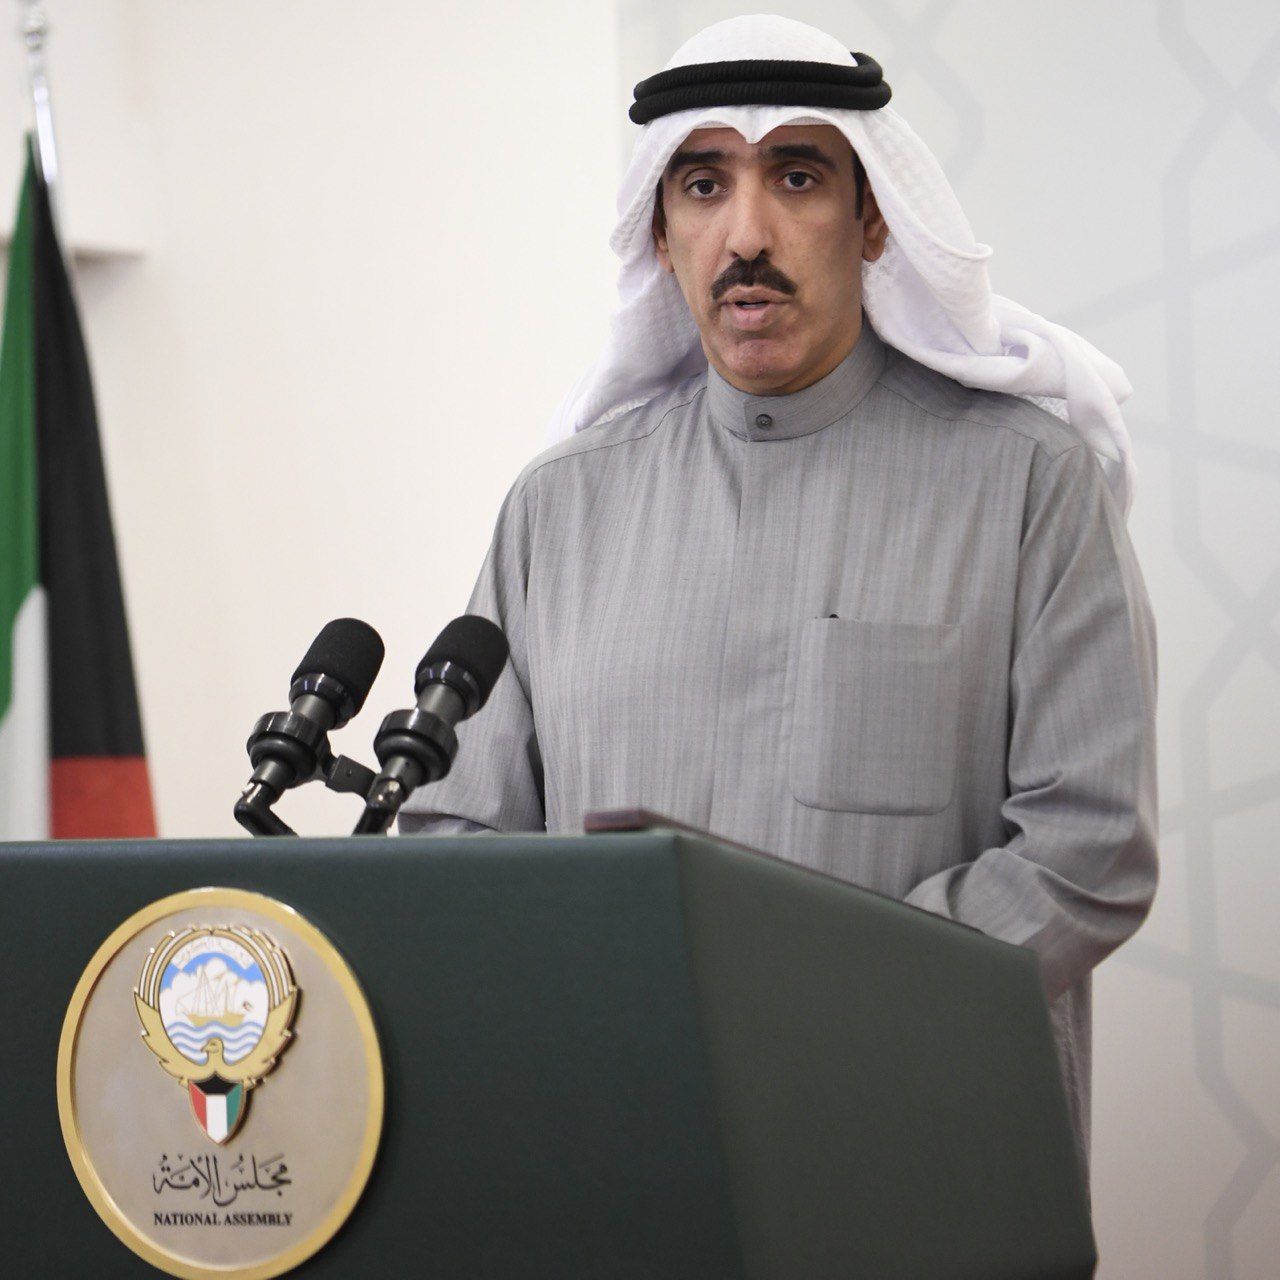 سعود العصفور: تقدمت ومجموعة من النواب باقتراحين بقانونين بشأن تنظيم خدمات الرعاية الصحية وإنشاء المركز الكويتي لزراعة الأعضاء